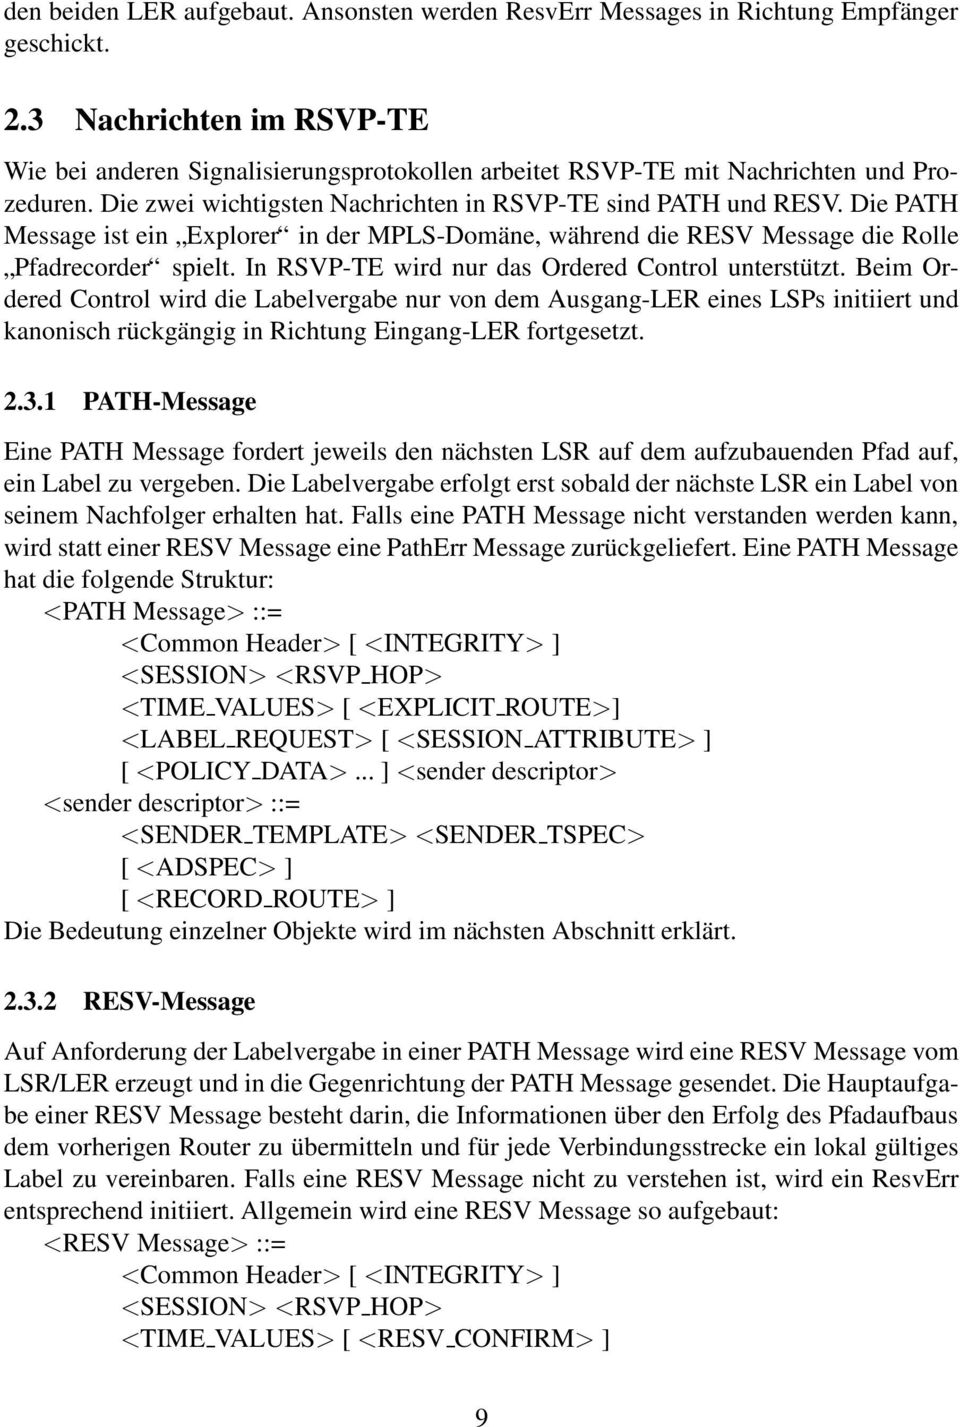 Die PATH Message ist ein Explorer in der MPLS-Domäne, während die RESV Message die Rolle Pfadrecorder spielt. In RSVP-TE wird nur das Ordered Control unterstützt.